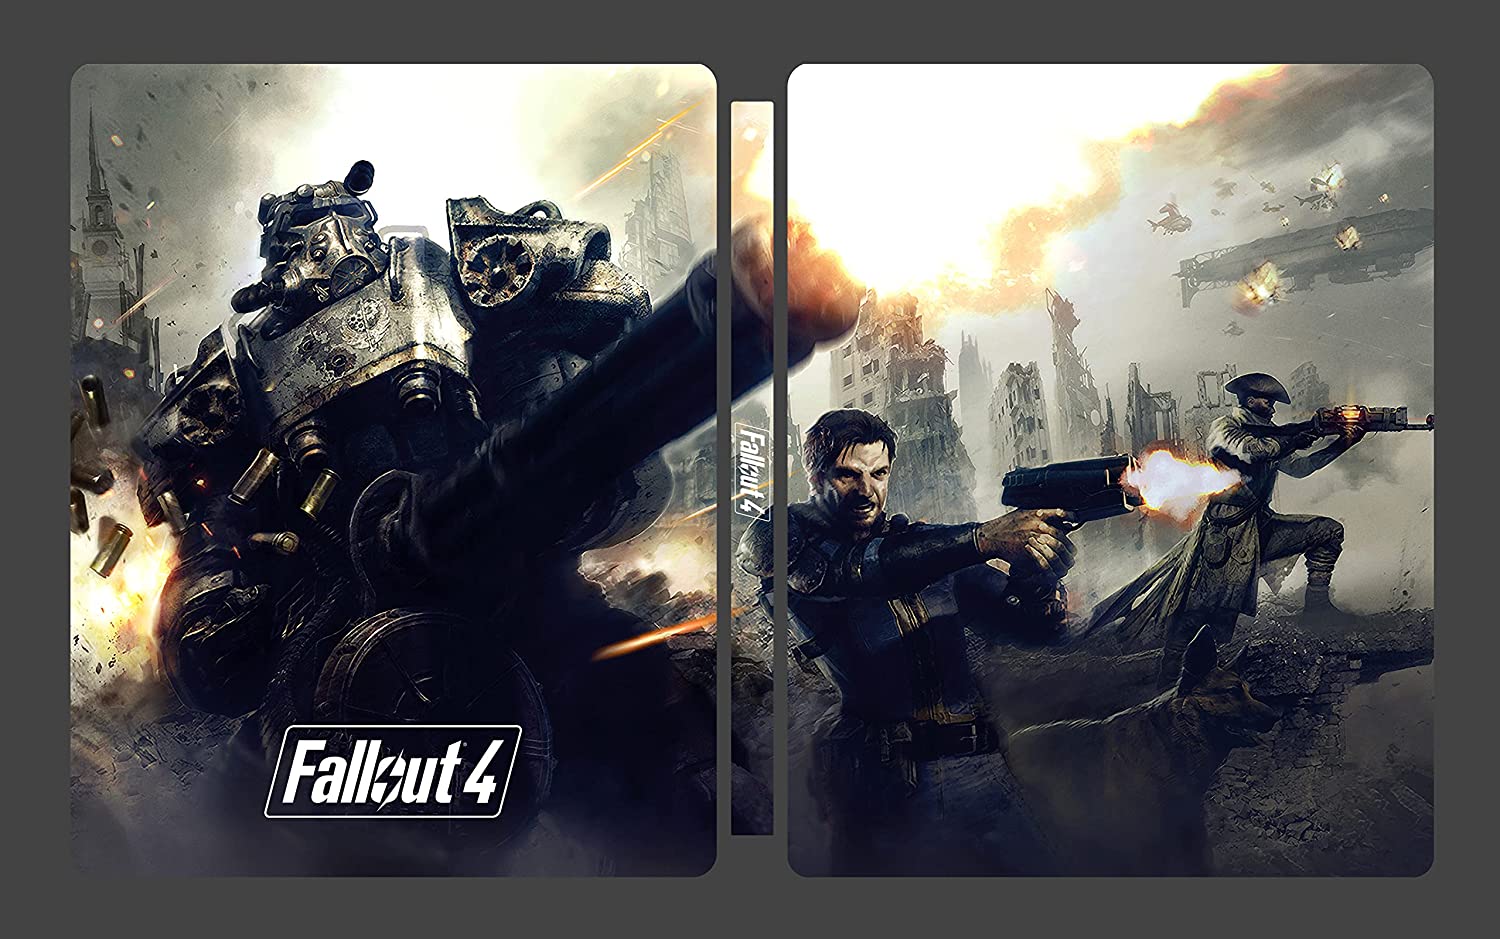 W październiku zadebiutuje Steelbook GOTY wydanie specjalne Edition - Kolekcjonerki 4 Fallout